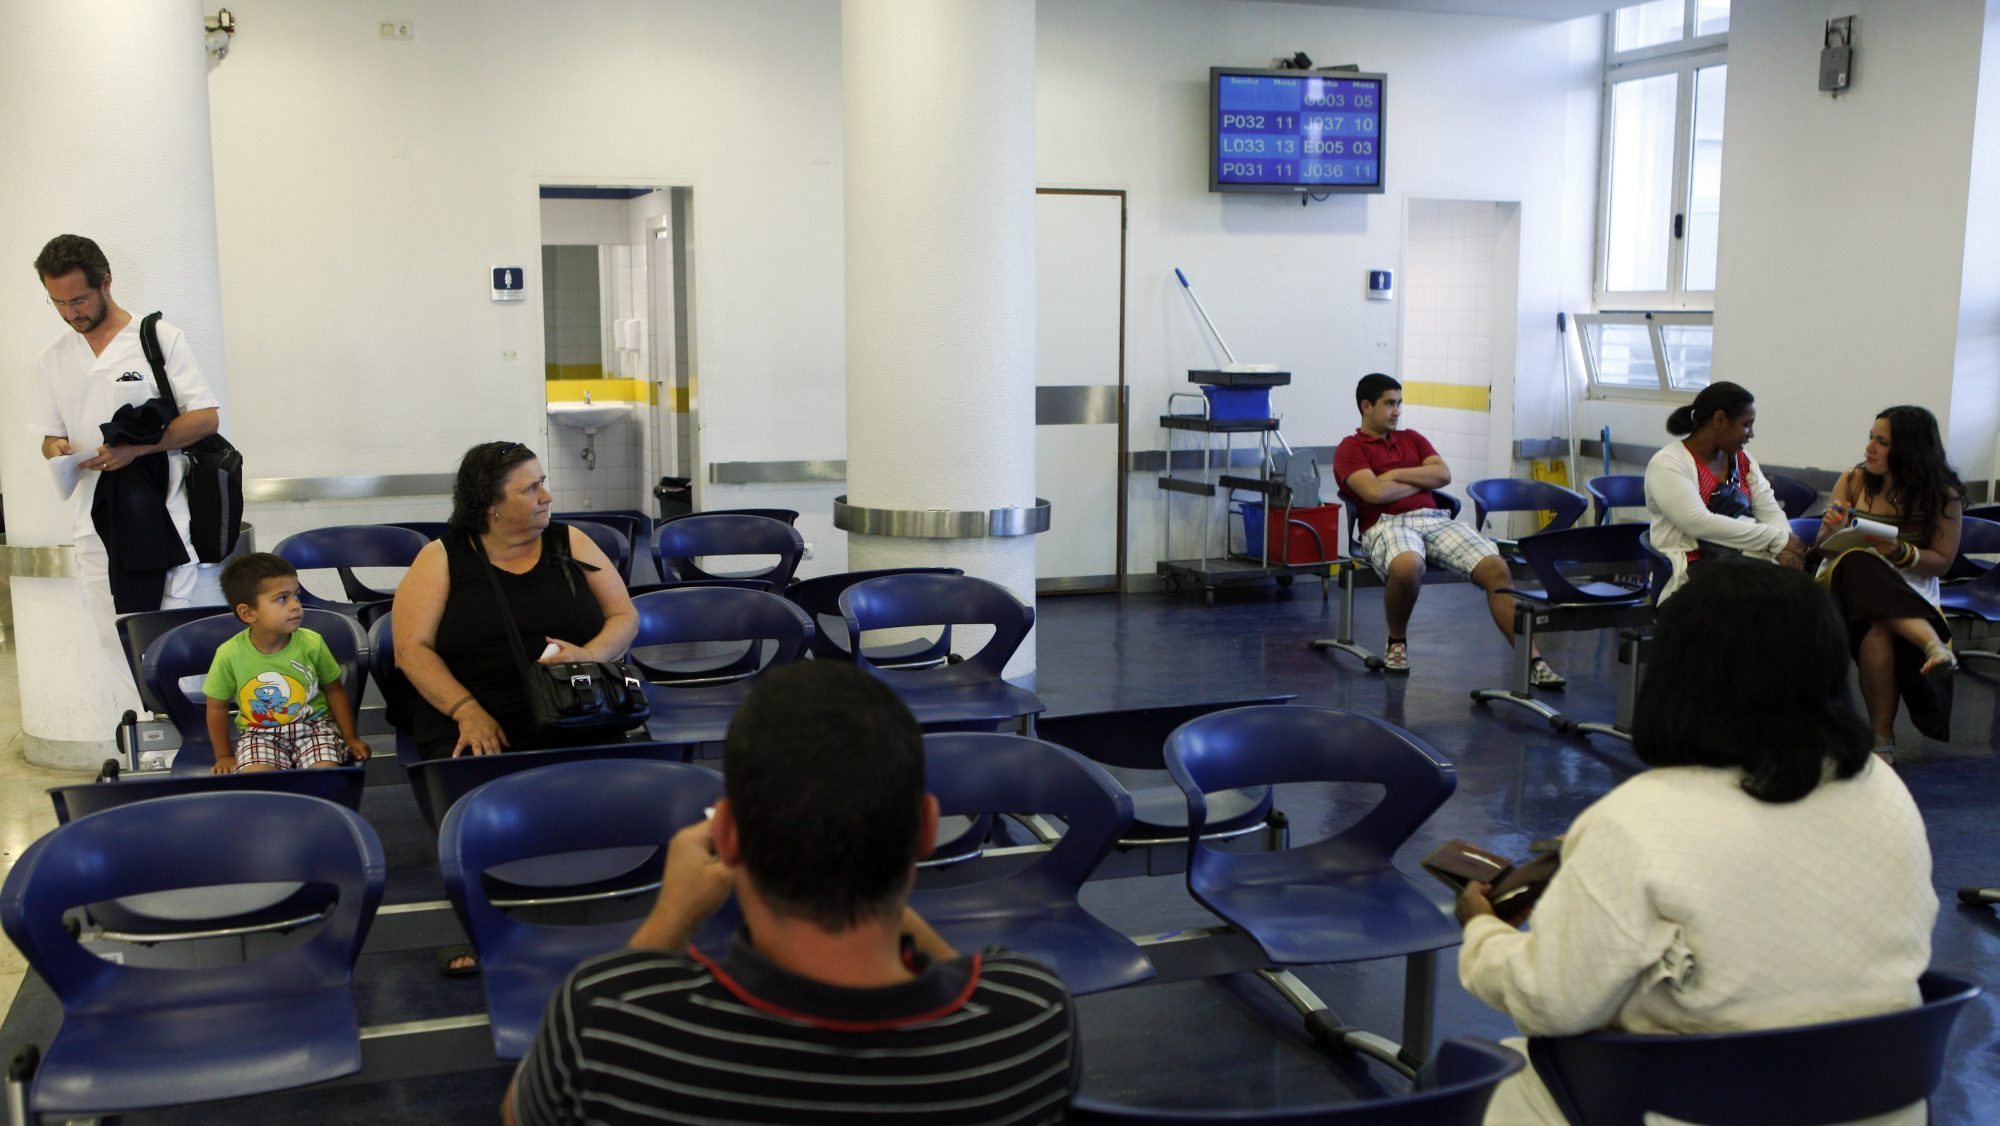 Utentes aguardam numa sala de espera por uma consulta no Hospital Santa Maria